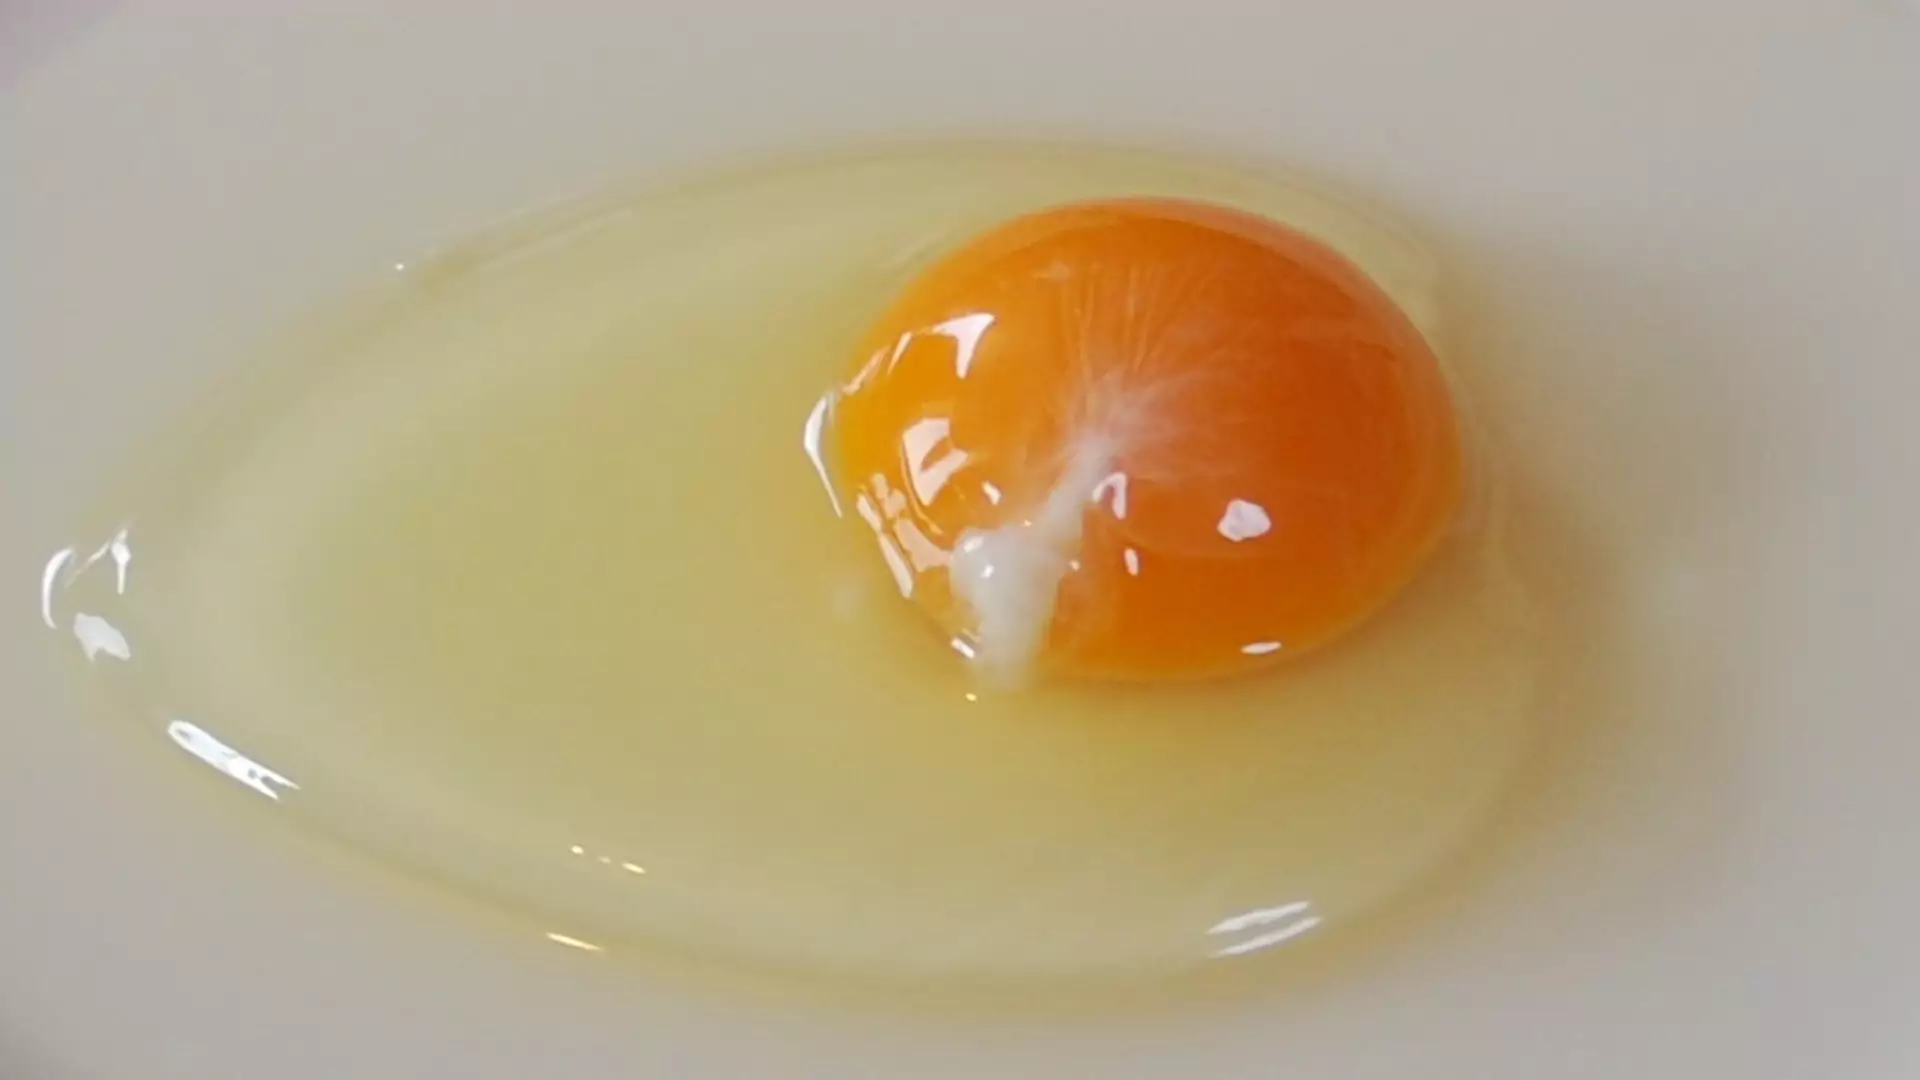 Białe skrętki w jajkach — czym są, do czego służą i czy powinniśmy je zjadać?